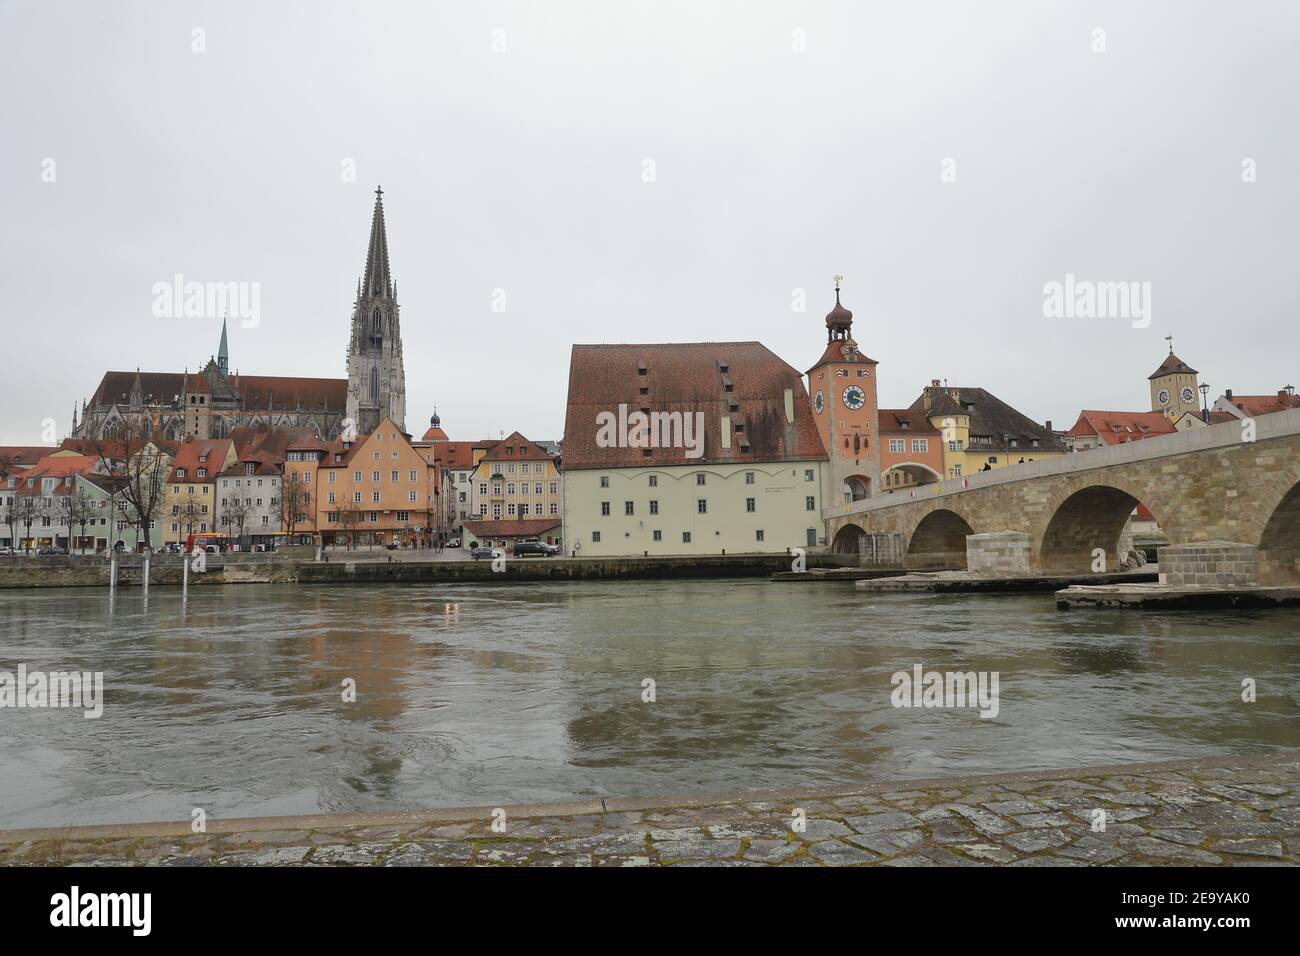 ALEMANIA, REGENSBURG, 01 DE FEBRERO de 2019: Paisaje urbano de Regensburg con puente de piedra sobre el río Danubio, Salzstadel, Torre romana, y la Catedral de San Pedro Foto de stock